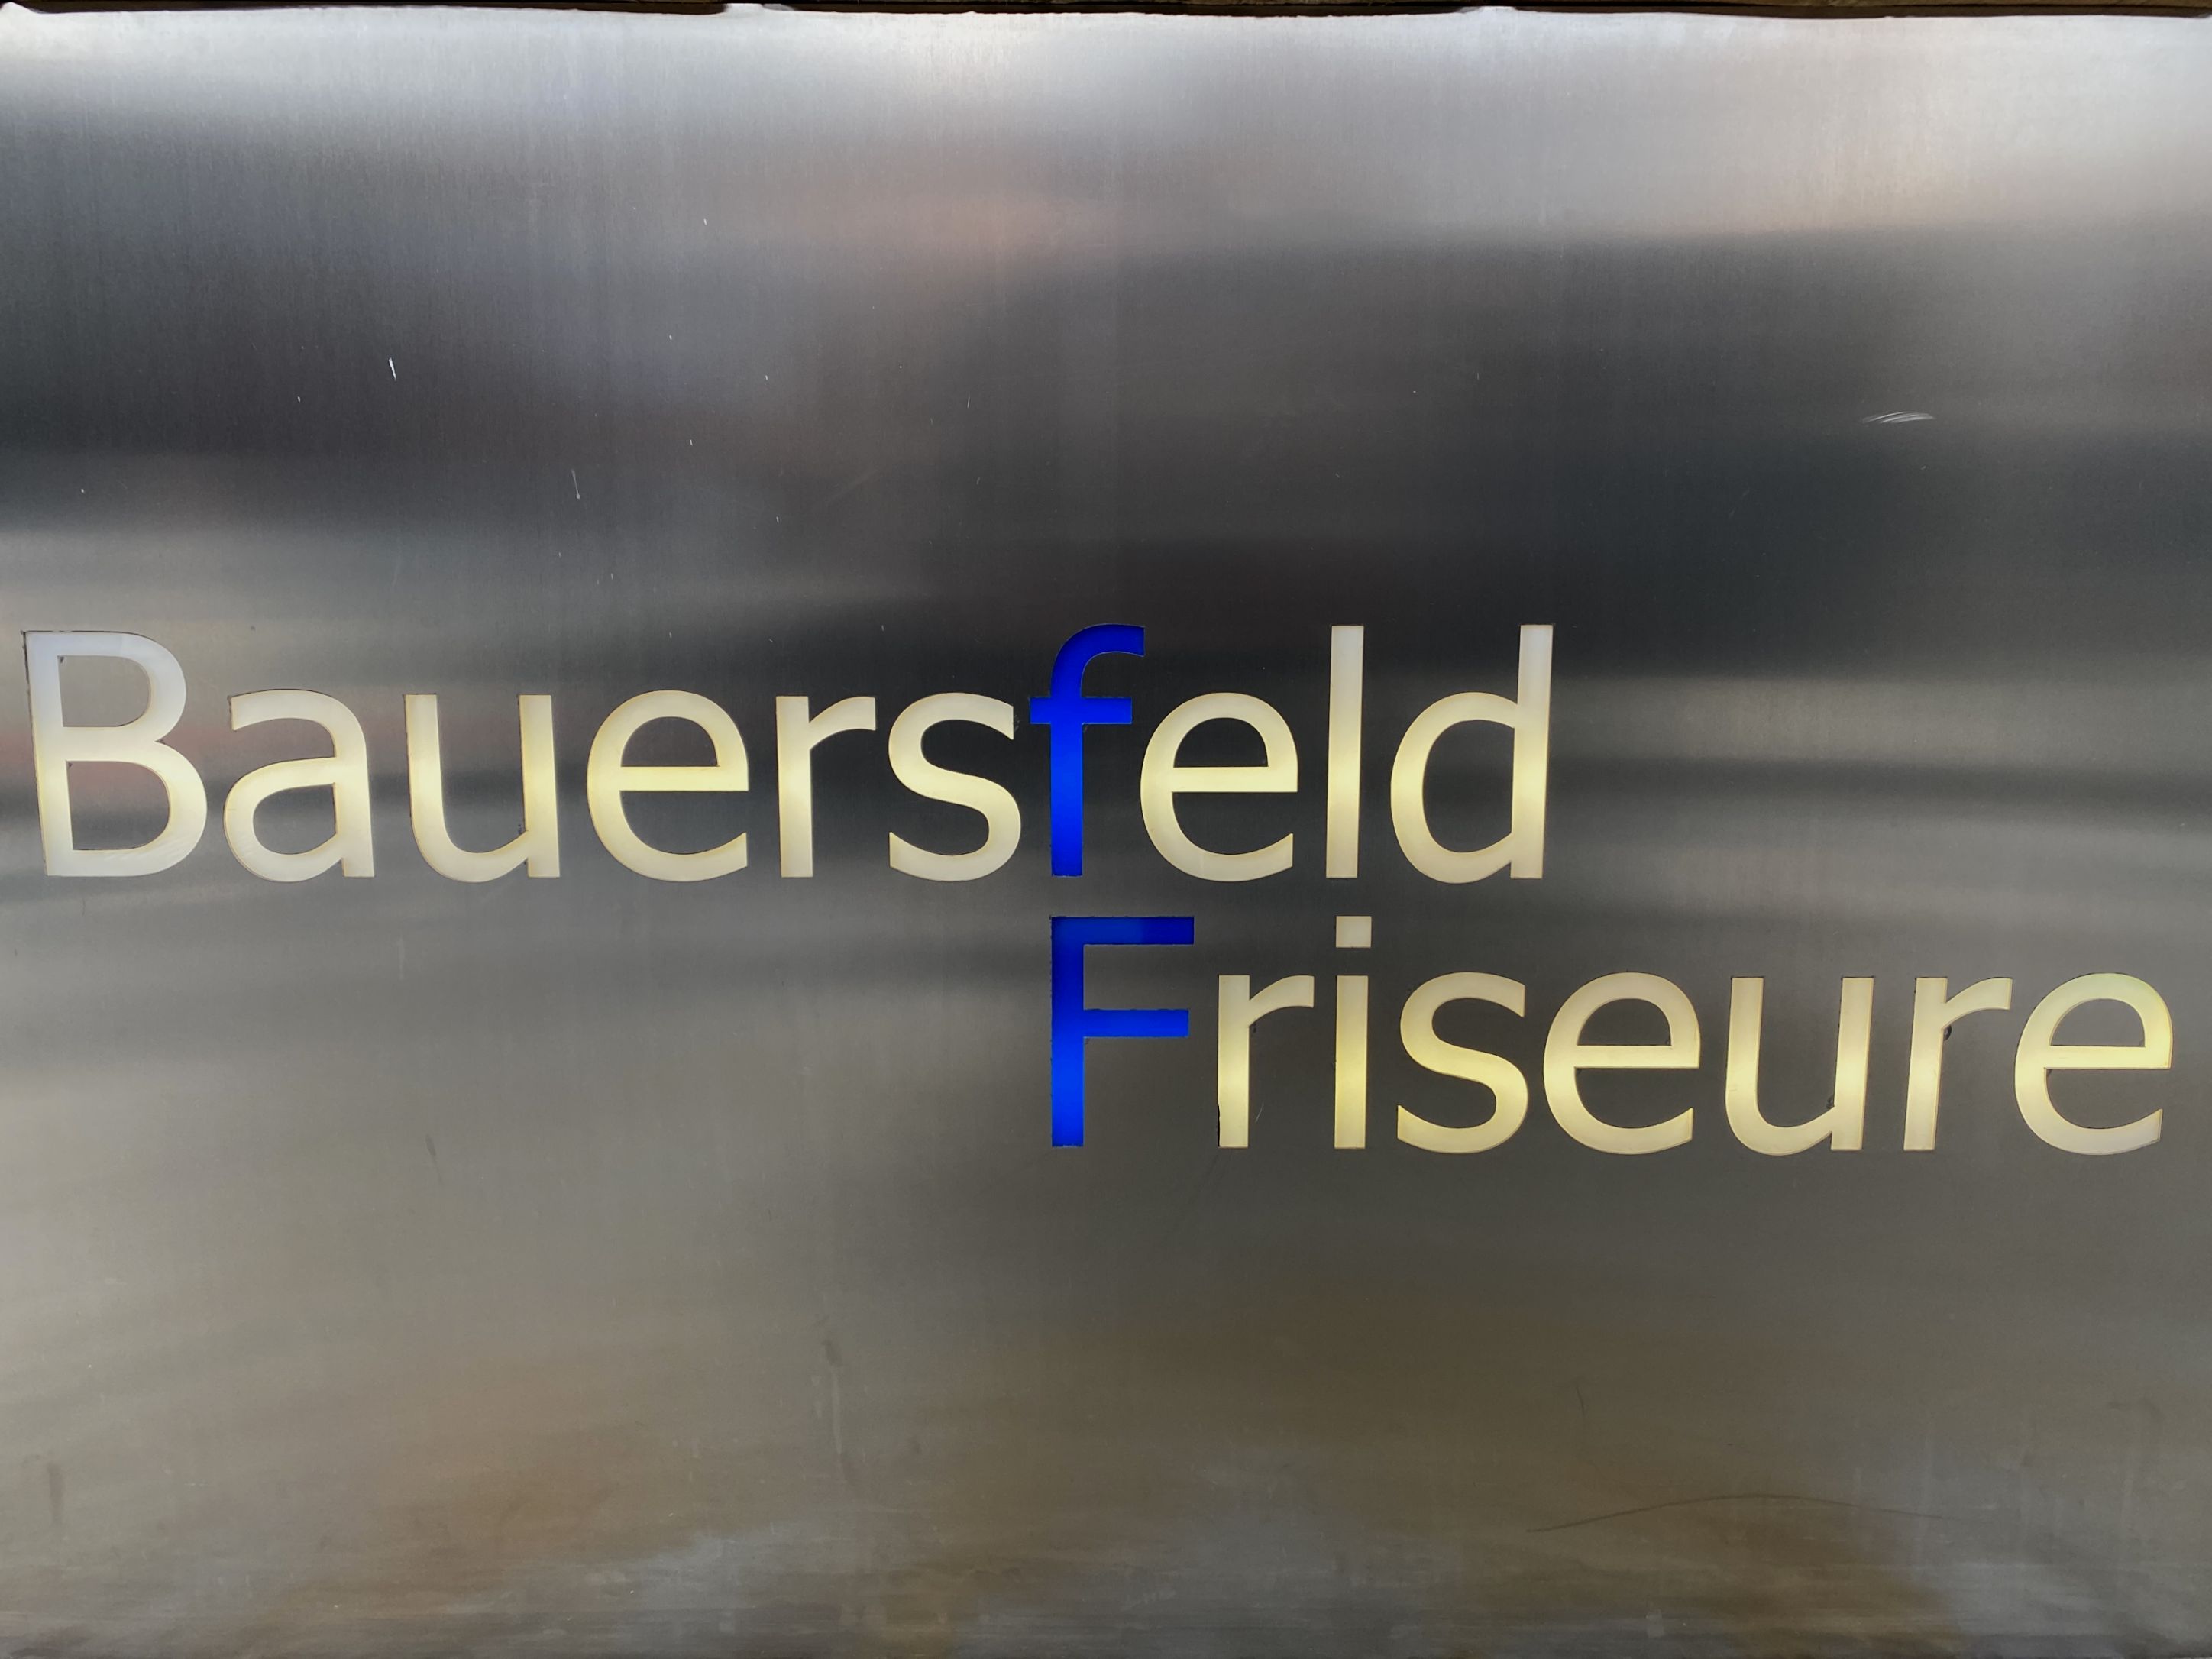 BauersfeldFriseure